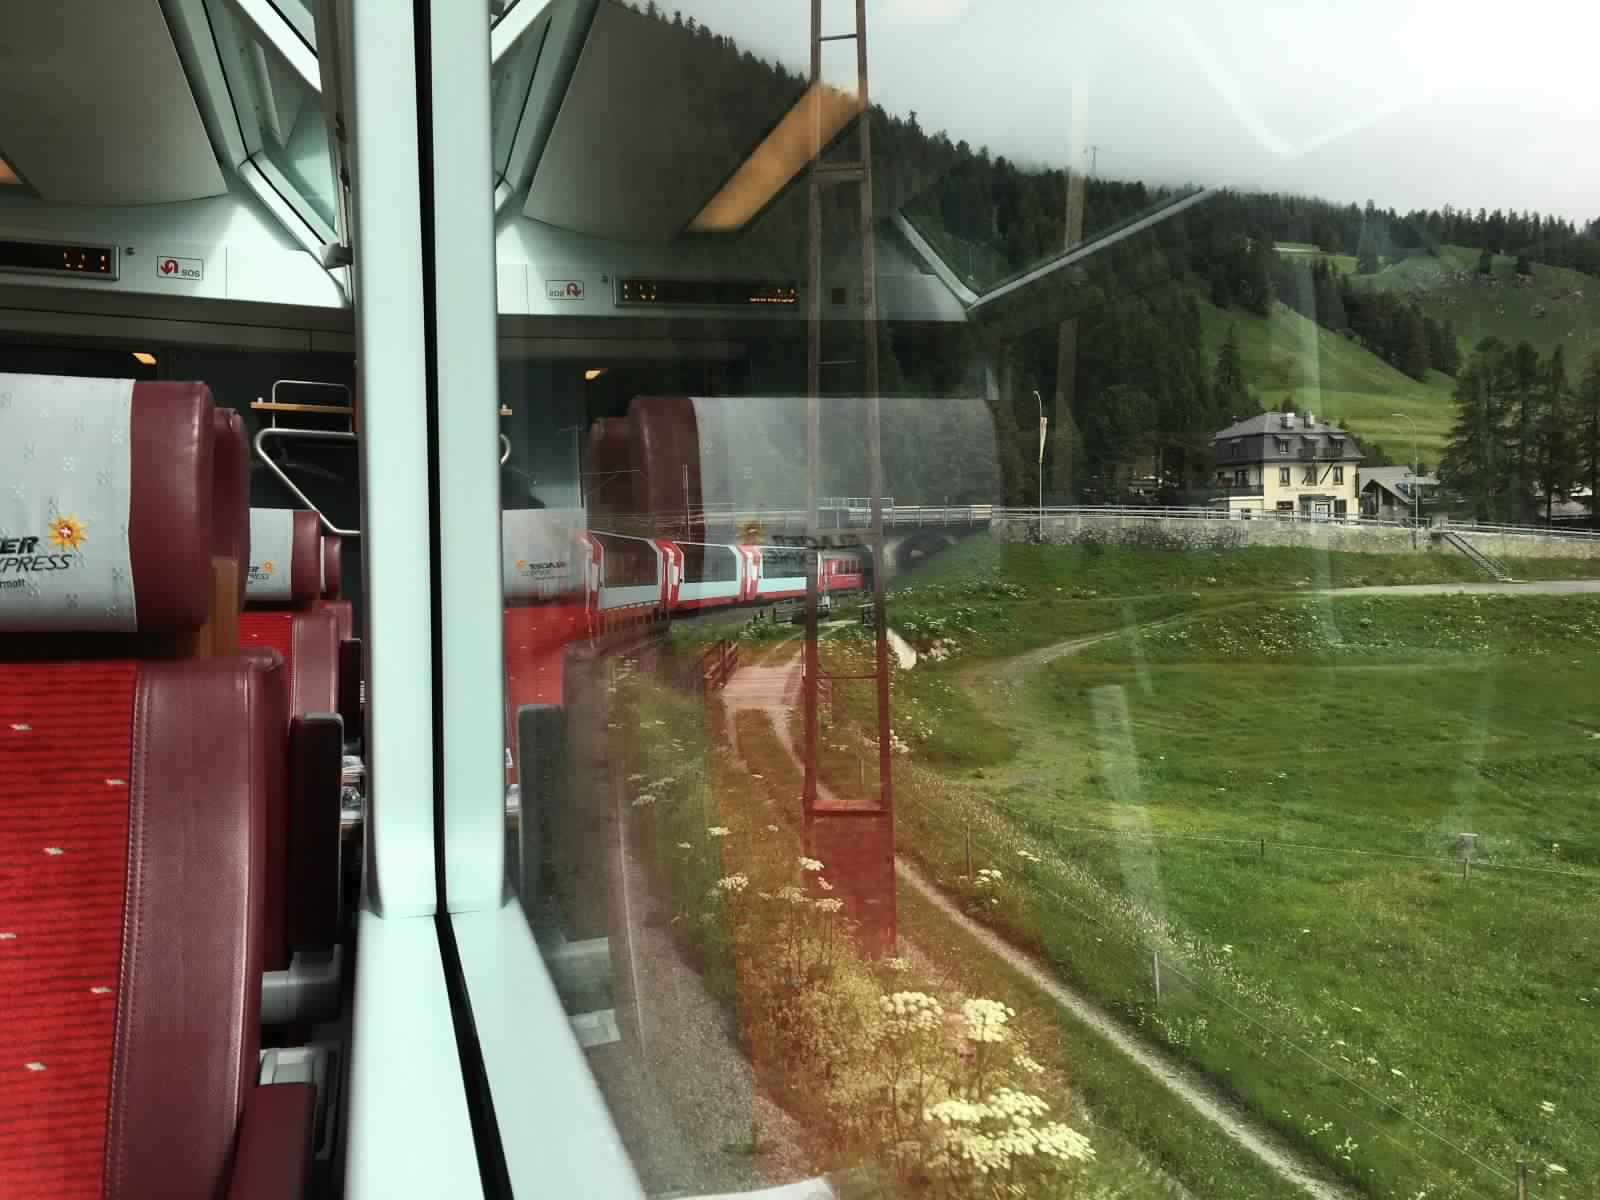 "بالصور" جولة مع قطار جلاسير إكسبريس عبر جبال اﻷلب السويسرية 3